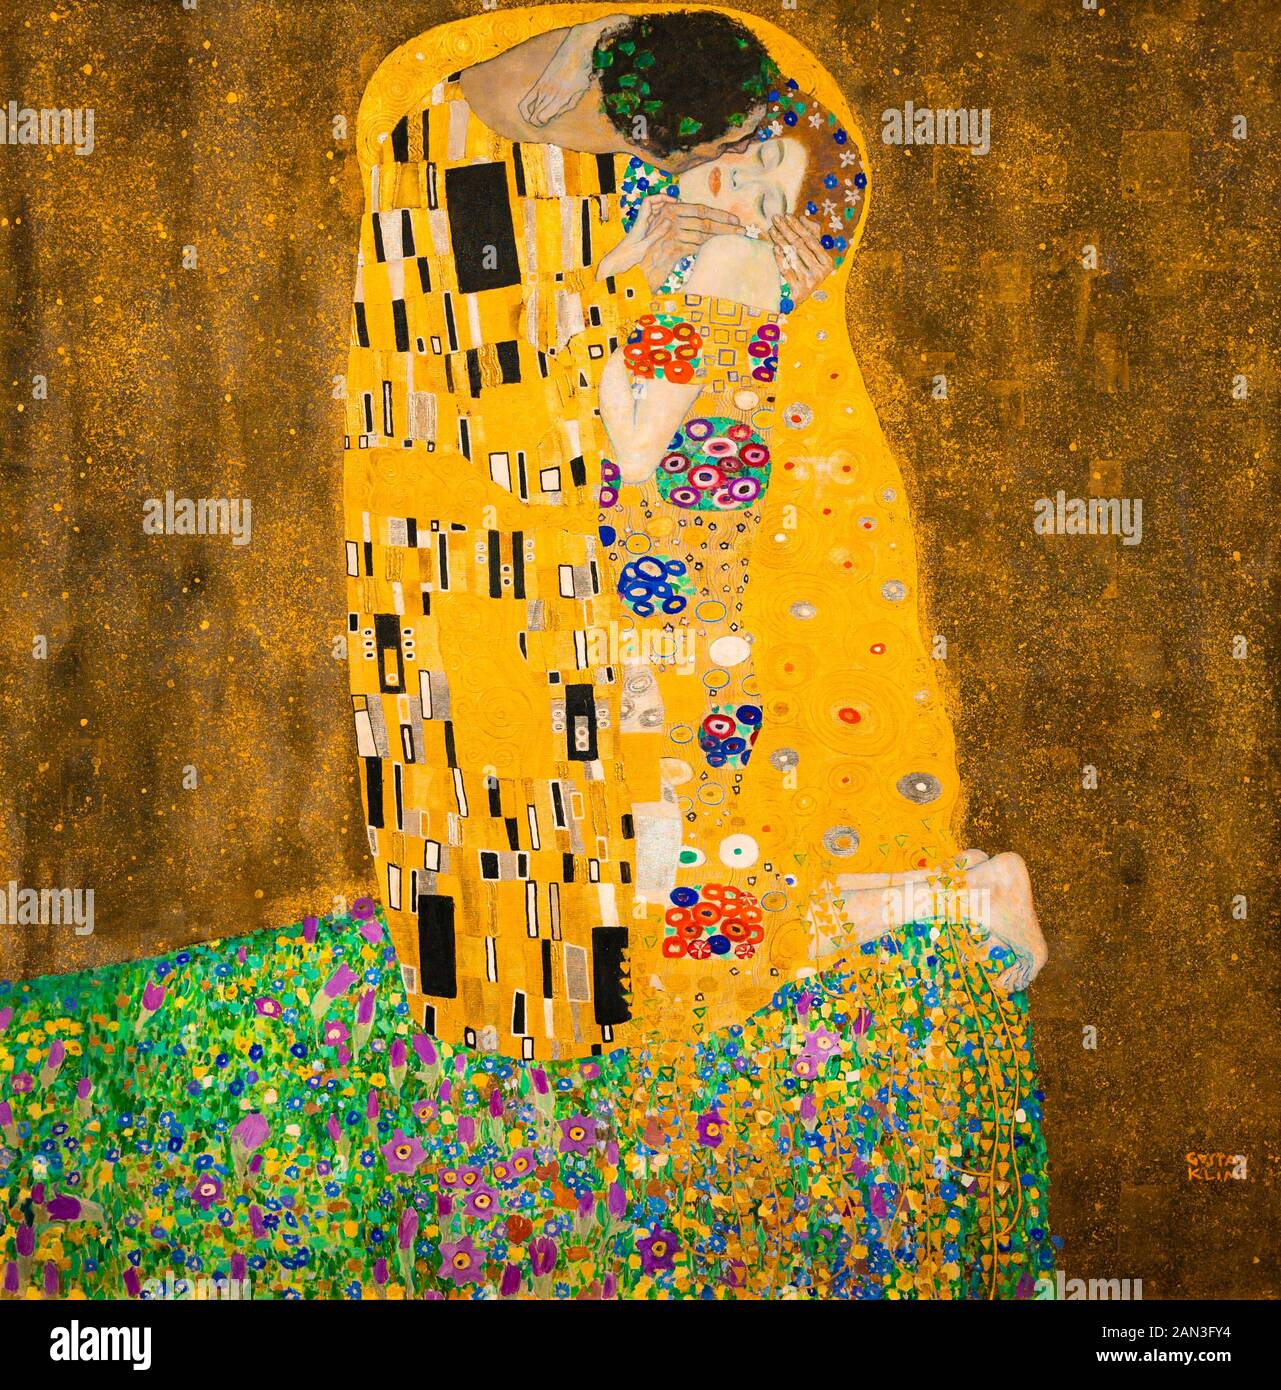 Der Kuss (Liebhaber). Öl und Blattgold auf Leinwand. 1907/1908. Von den Österreichischen symbolistische Maler Gustav Klimt. Belvedere Museum, Wien, Österreich. Stockfoto